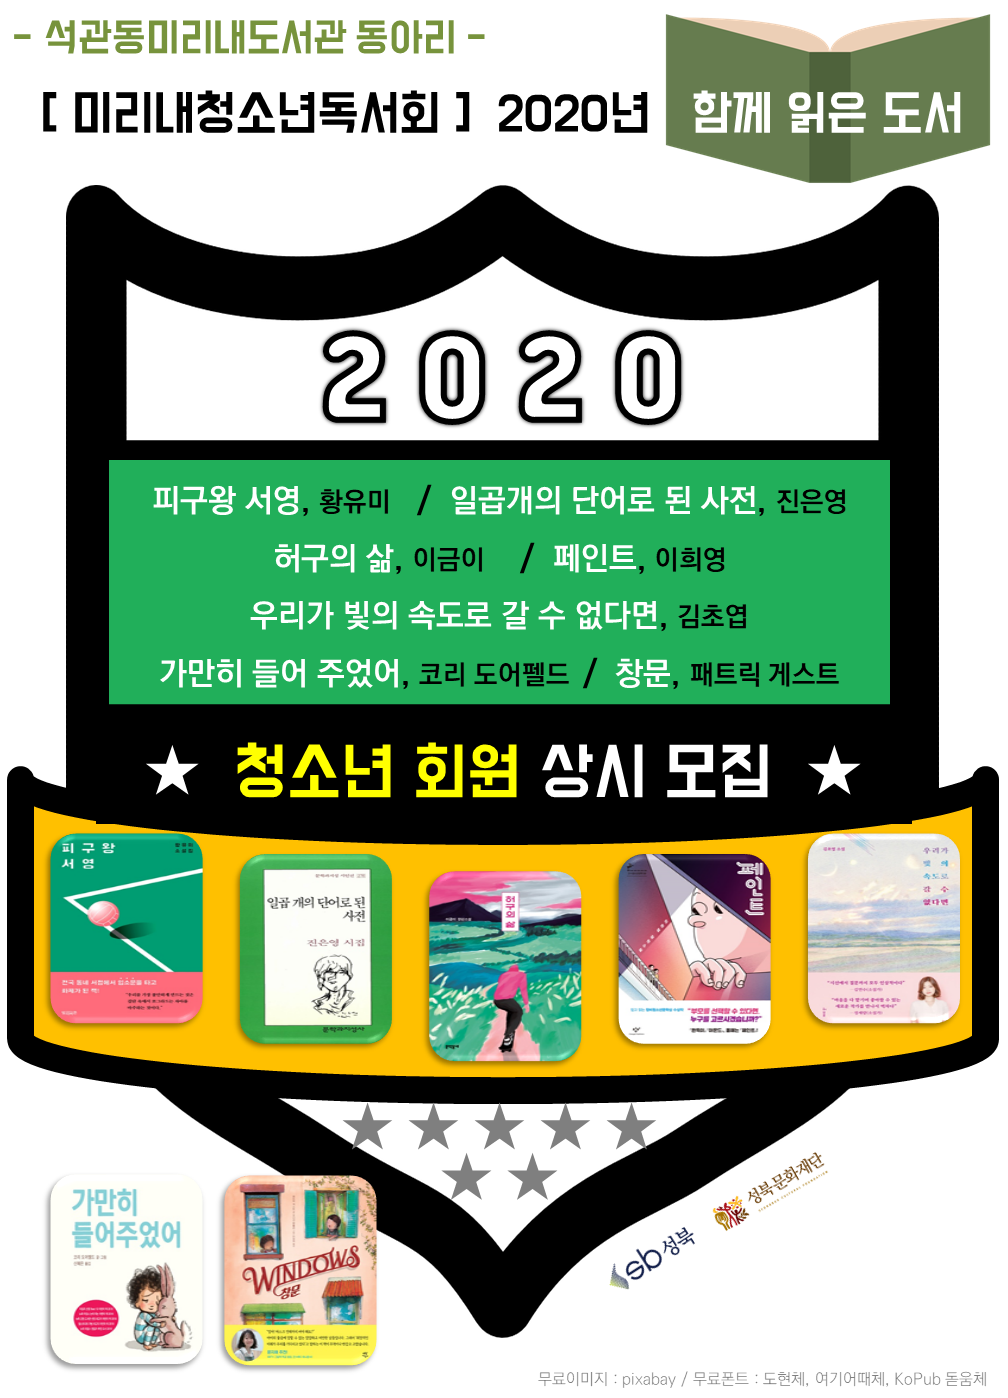 미리내청소년독서회 (2020년 활동) 표지